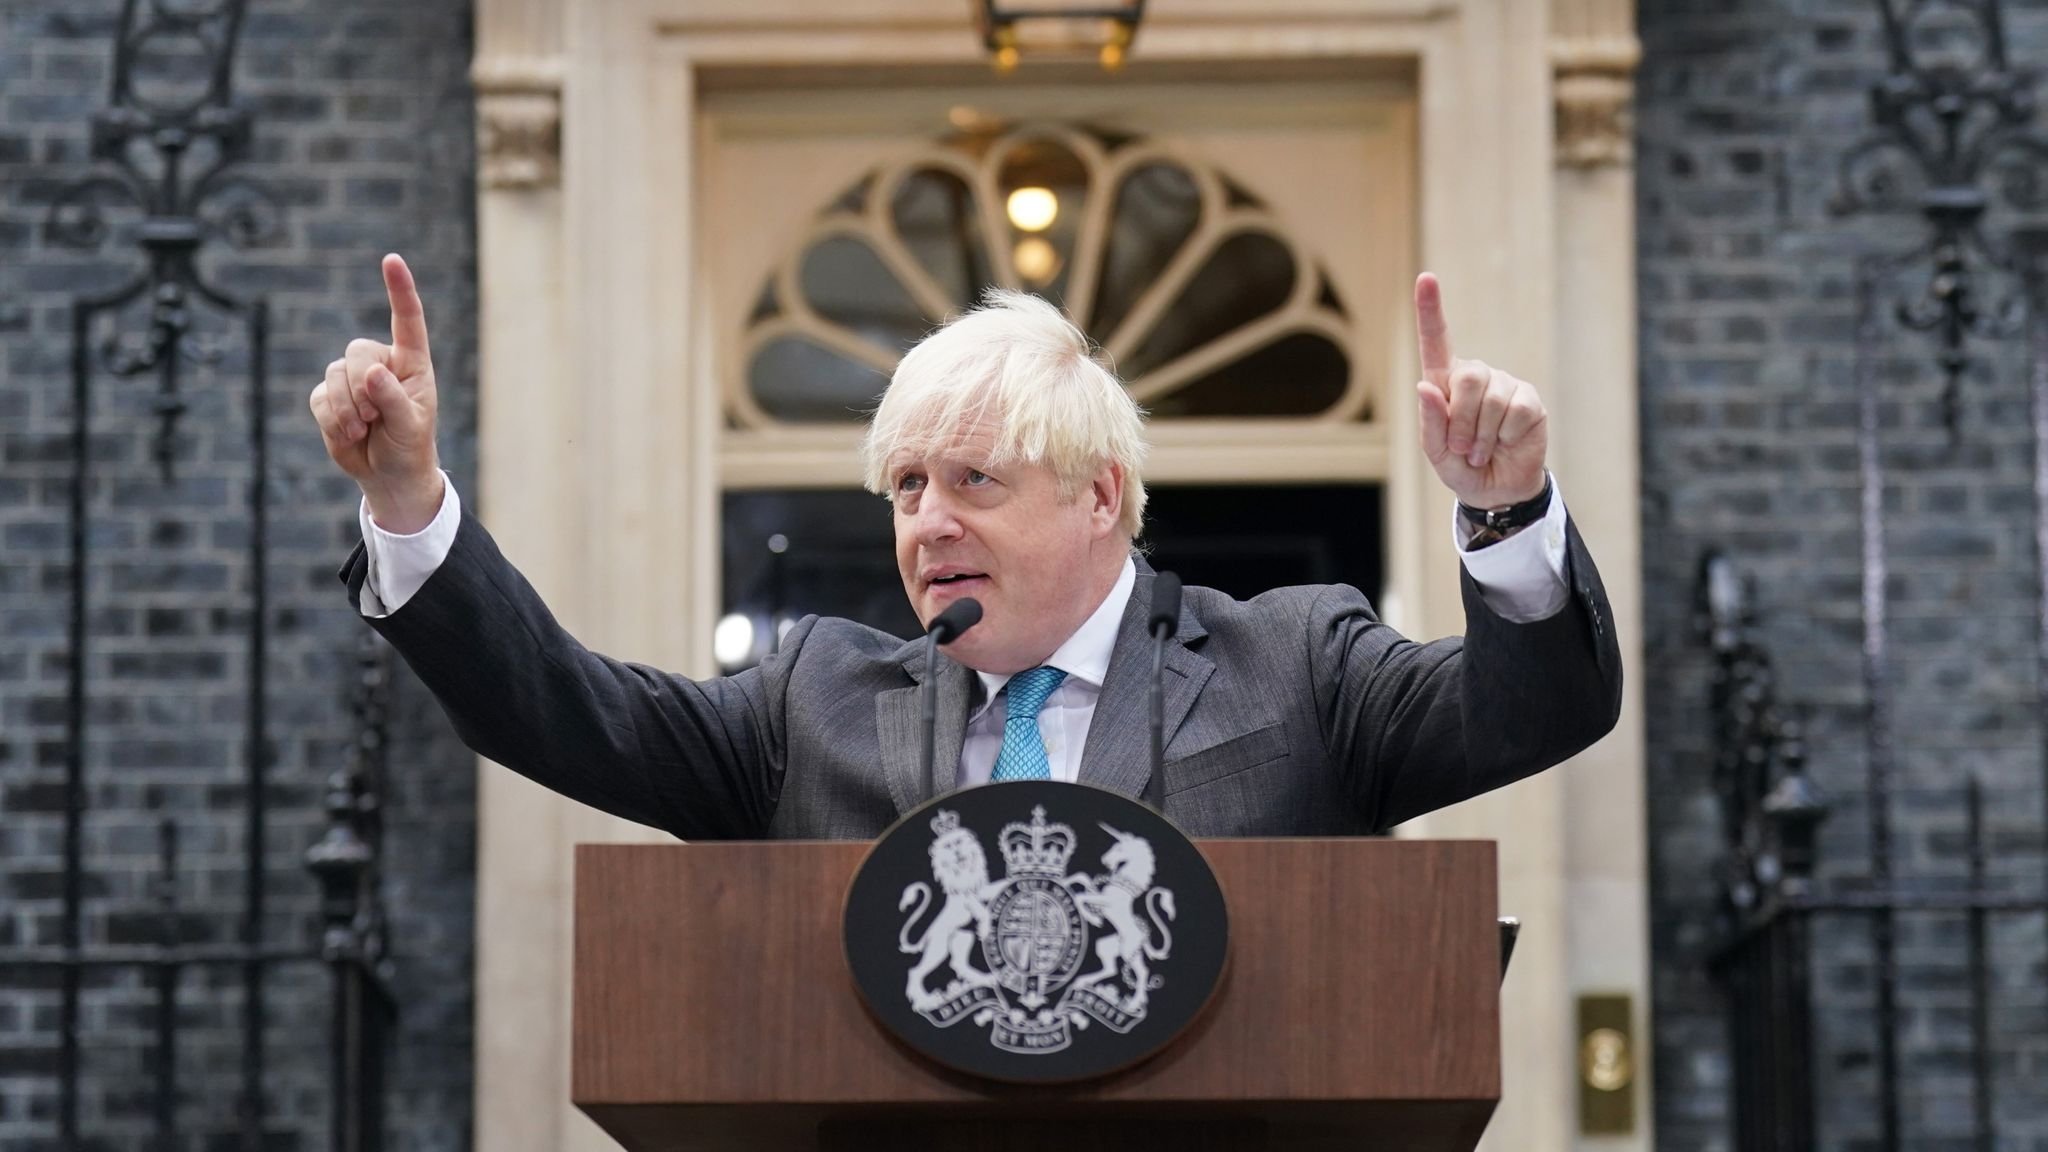  Boris Johnson ar vrea să candideze pentru a deveni următorul premier al Marii Britanii după demisia lui Liz Truss